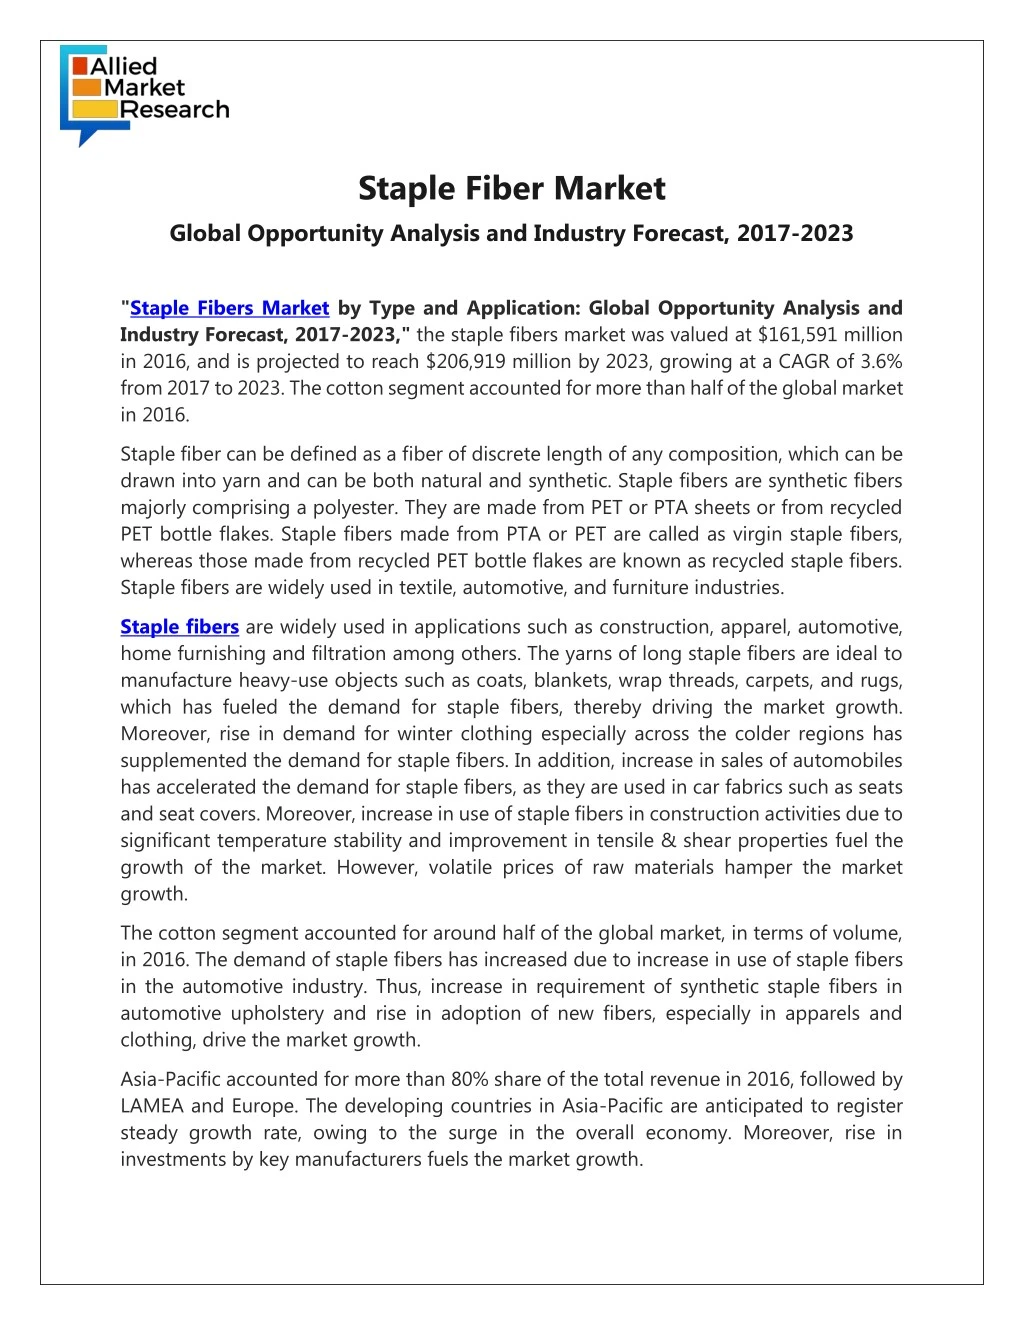 staple fiber market